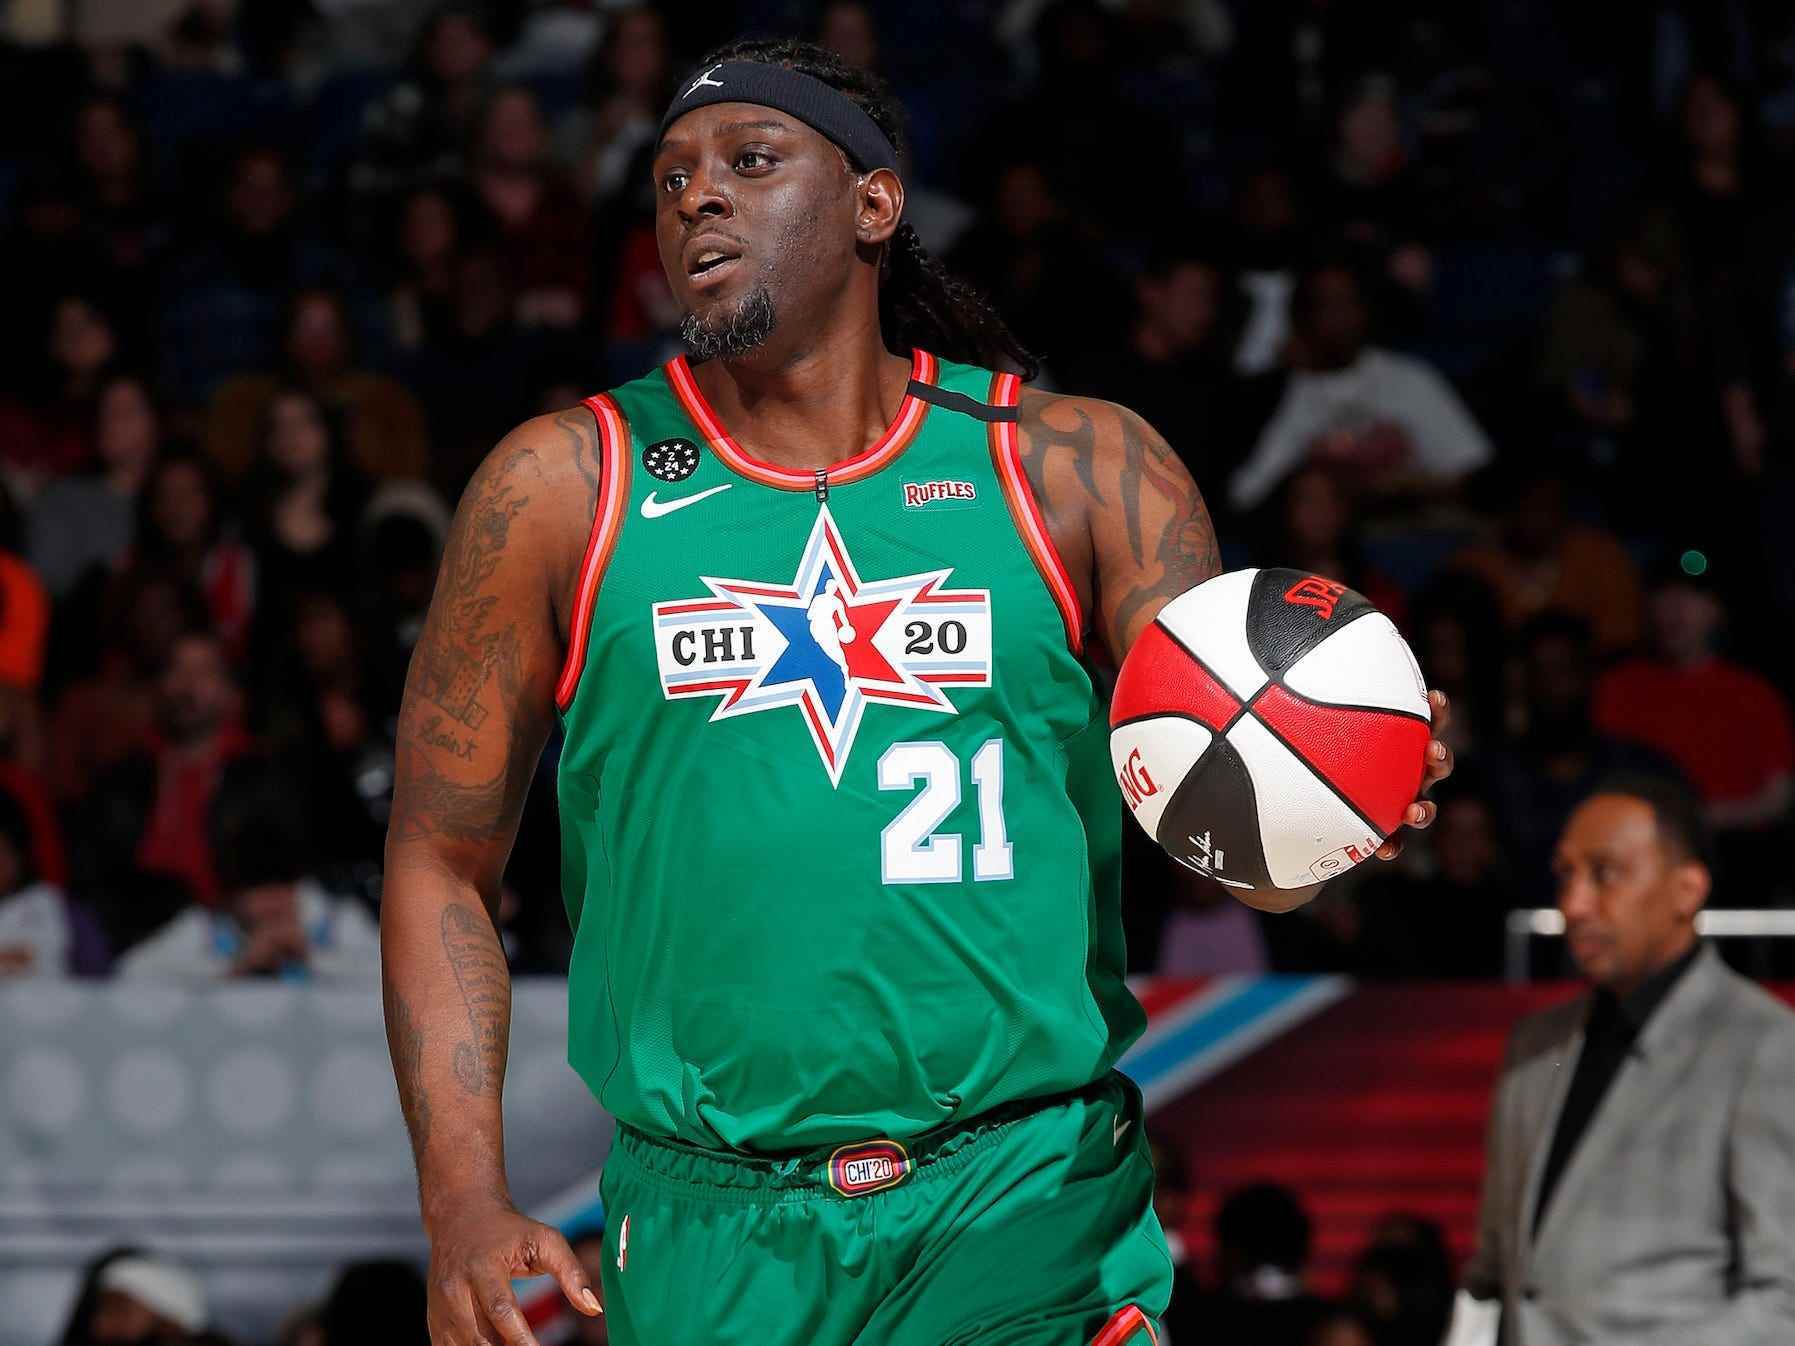 Darius Miles dribbelt den Ball während des NBA All-Star Celebrity Game im Jahr 2020.